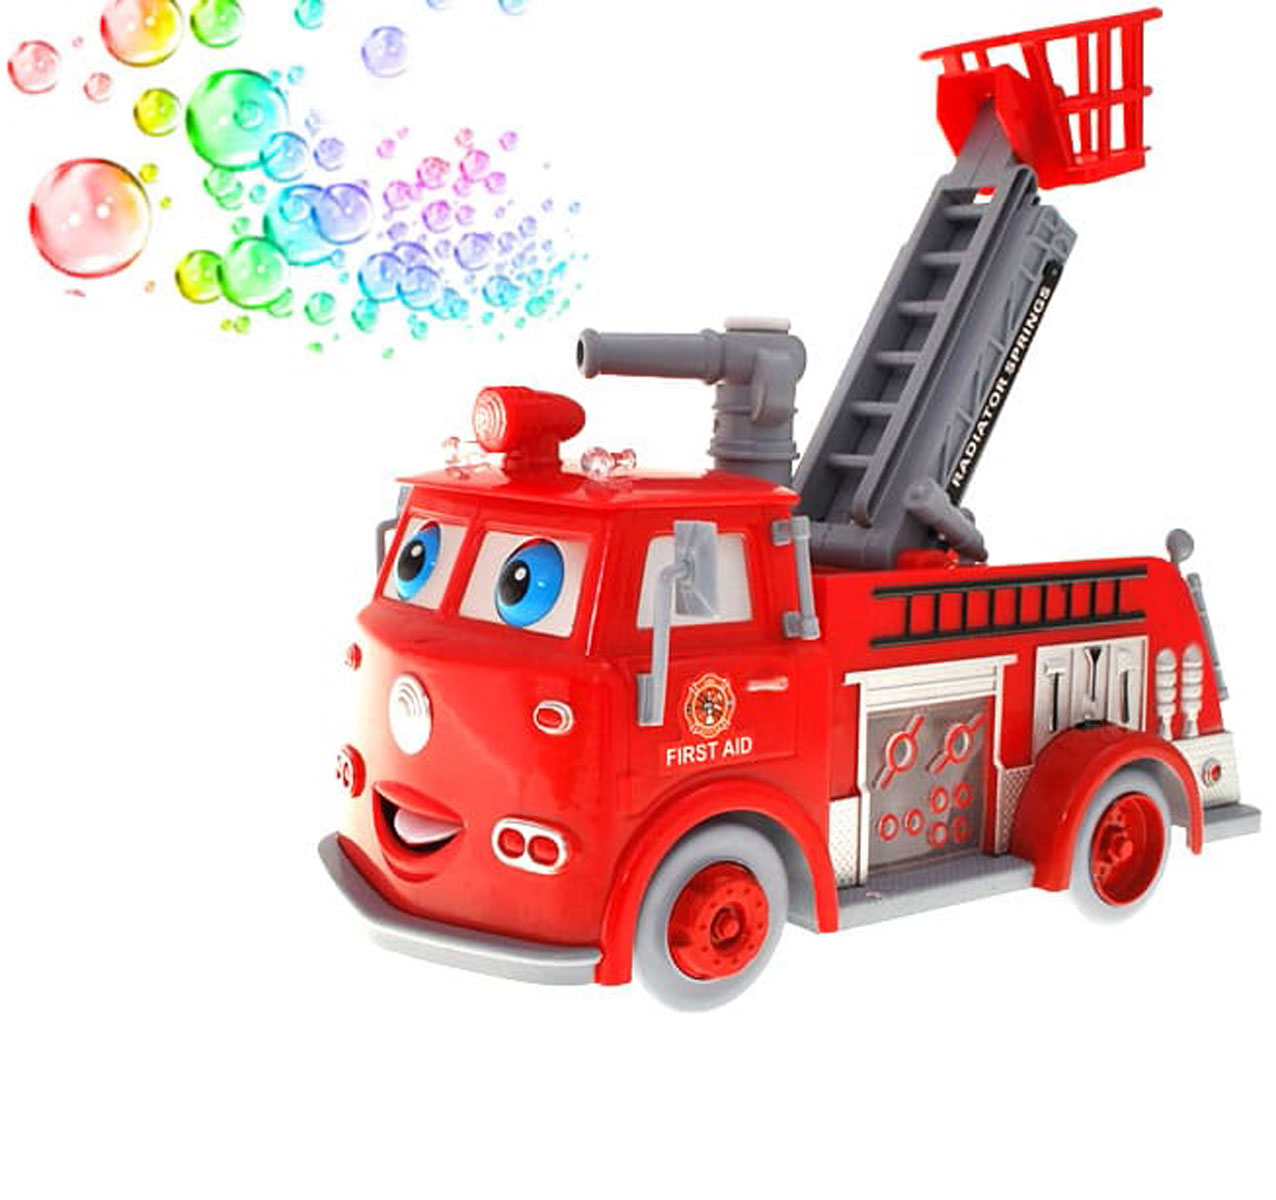 Музыкальная пожарная машина с мыльными пузырями